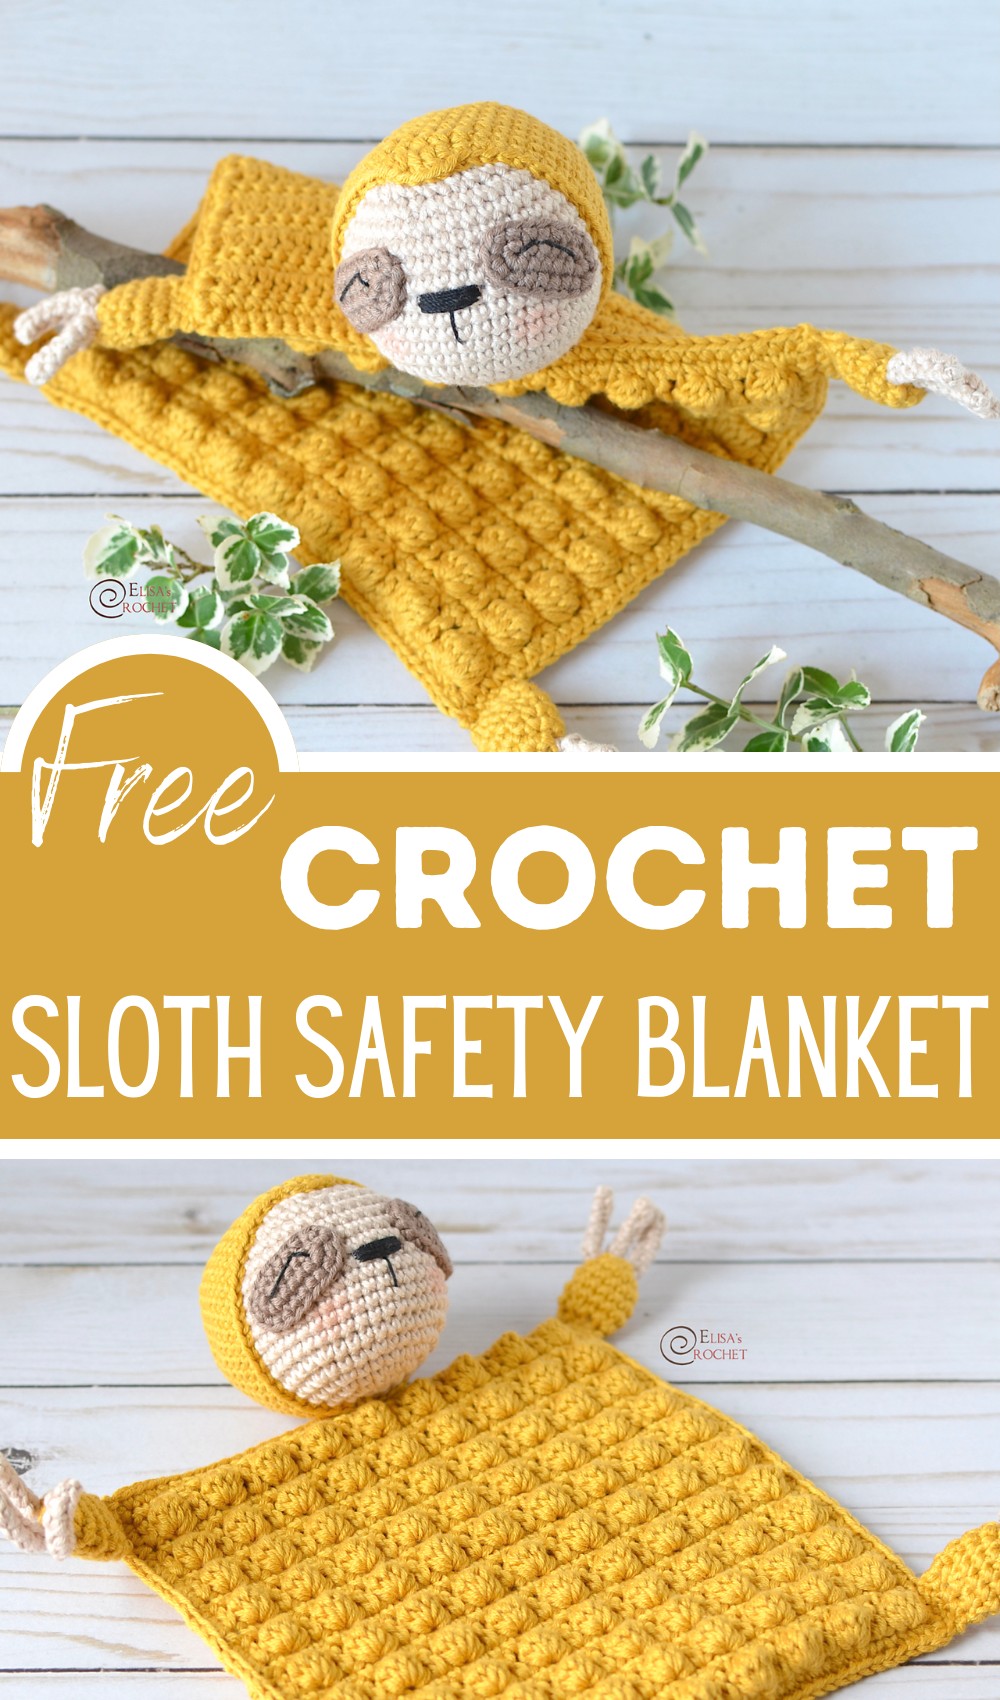 Sloth Safety Blanket